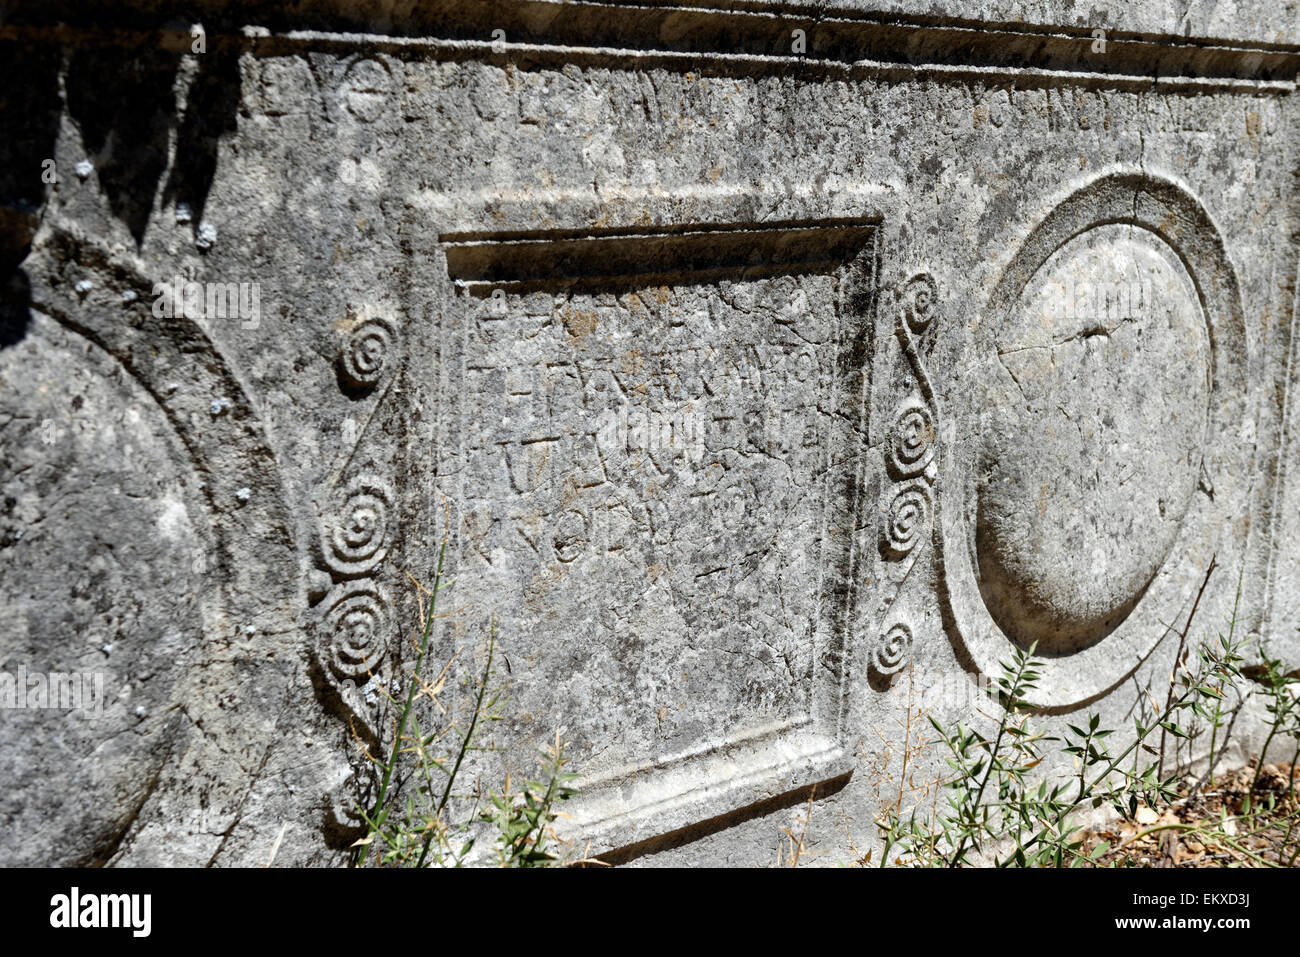 Dettagli su sarcofagi sulla necropoli settentrionale. Termessos, nella Turchia meridionale. Foto Stock